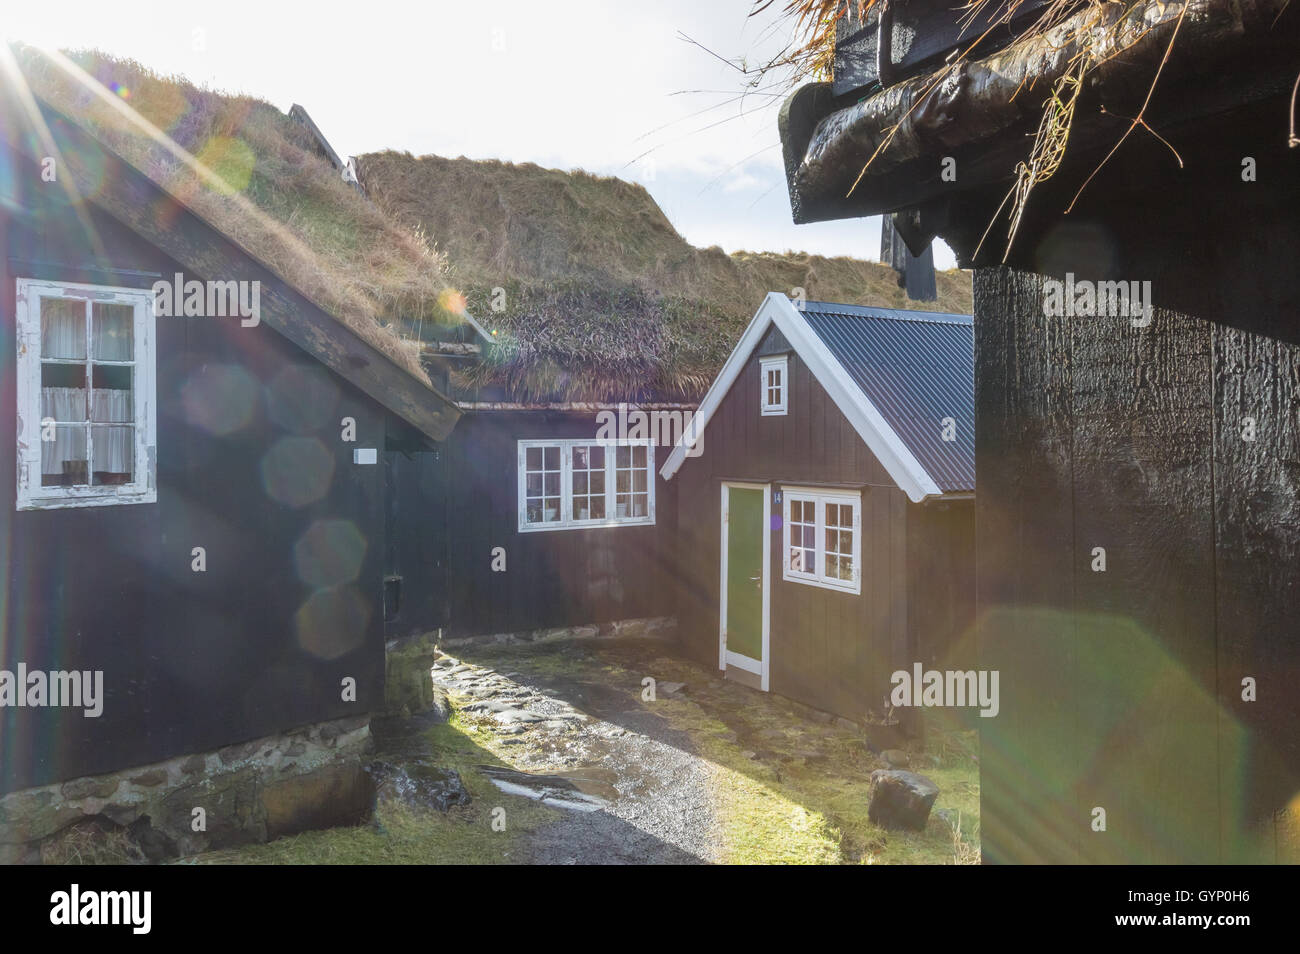 L'ancien domaine de l'Torhsavn. L'île de Streymoy, Îles Féroé Banque D'Images